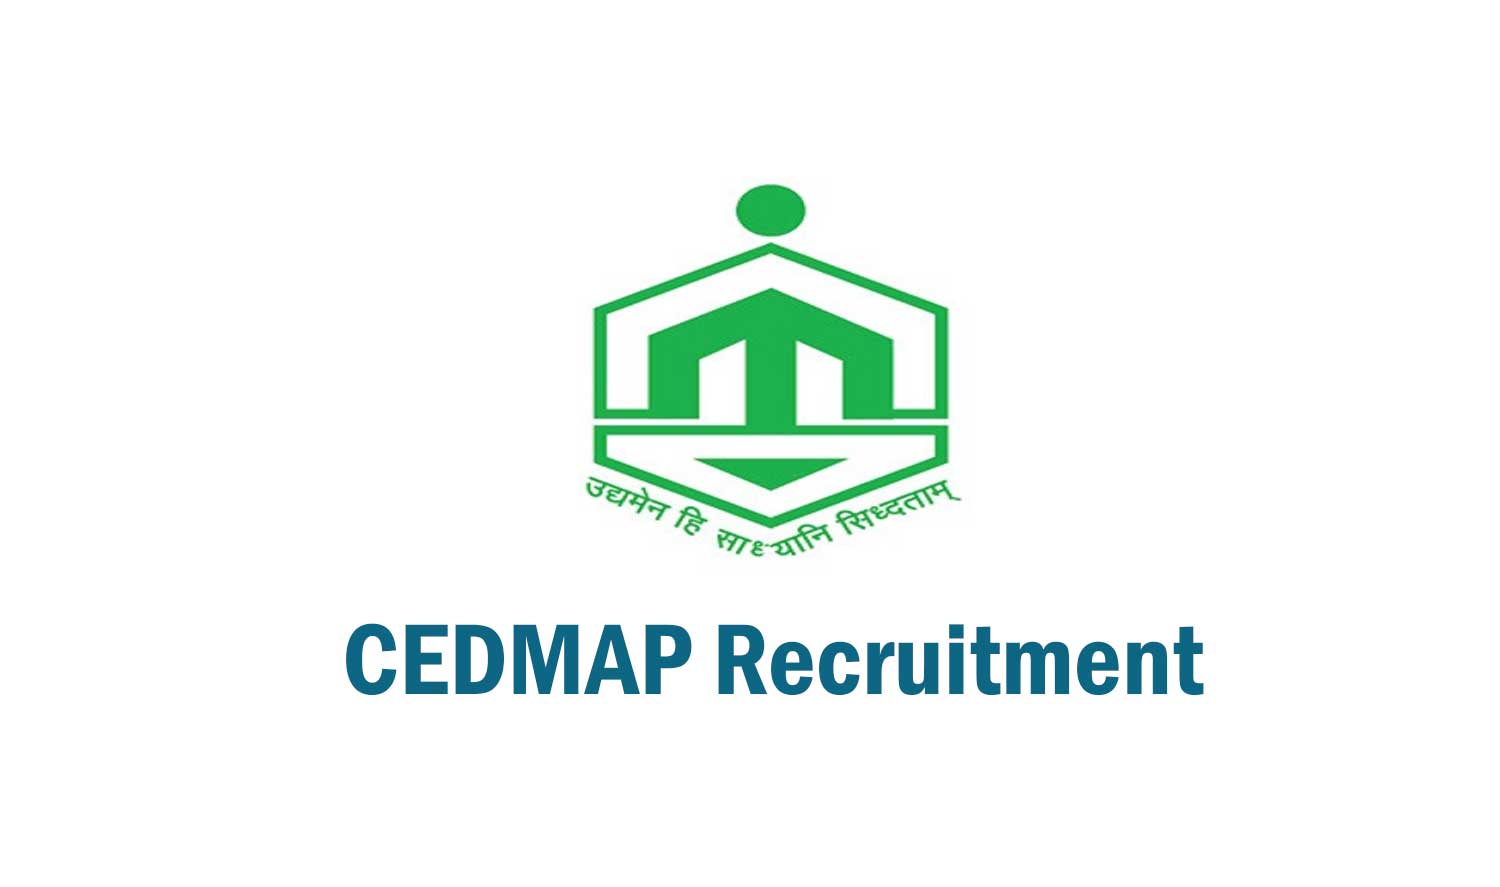 CEDMAP Recruitment